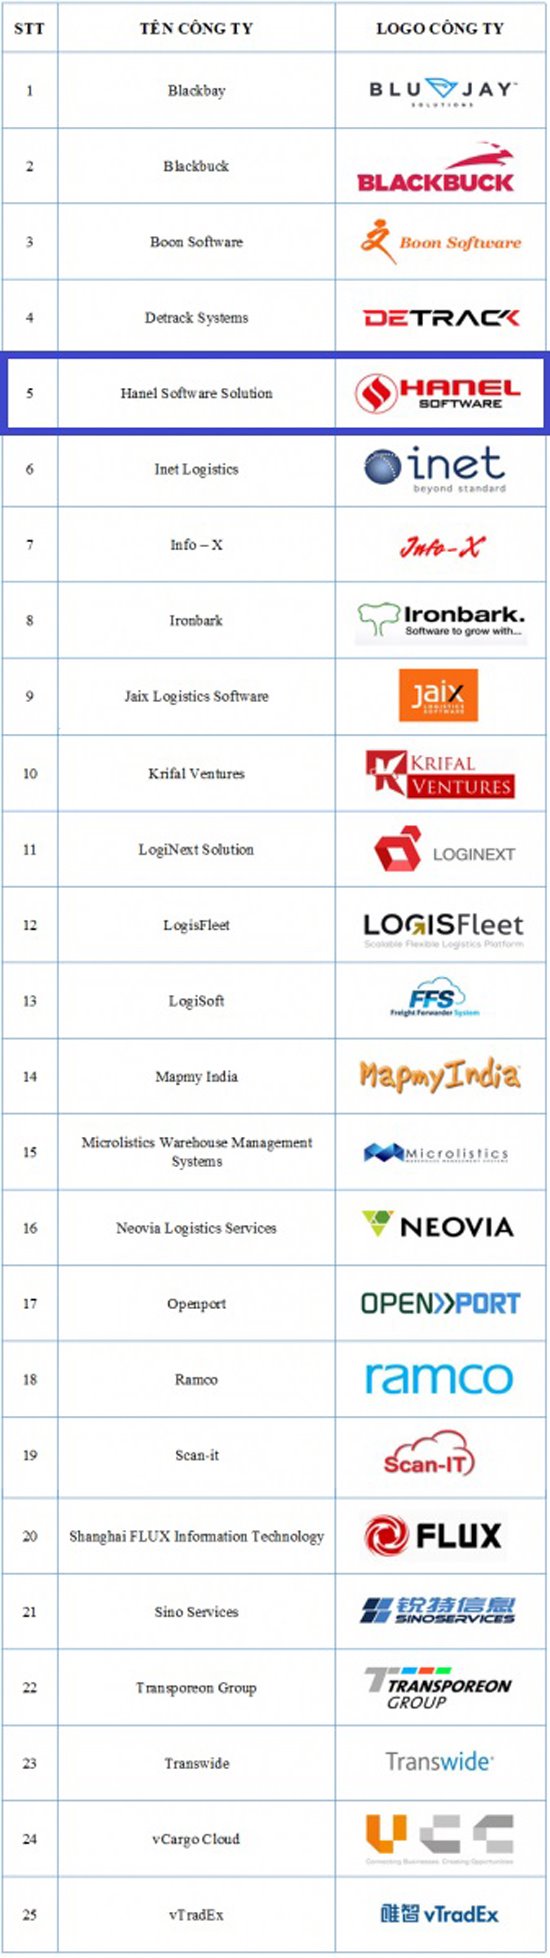 HanelSoft lọt Top 25 nhà cung cấp giải pháp công nghệ logistic châu Á-Thái Bình Dương 2018